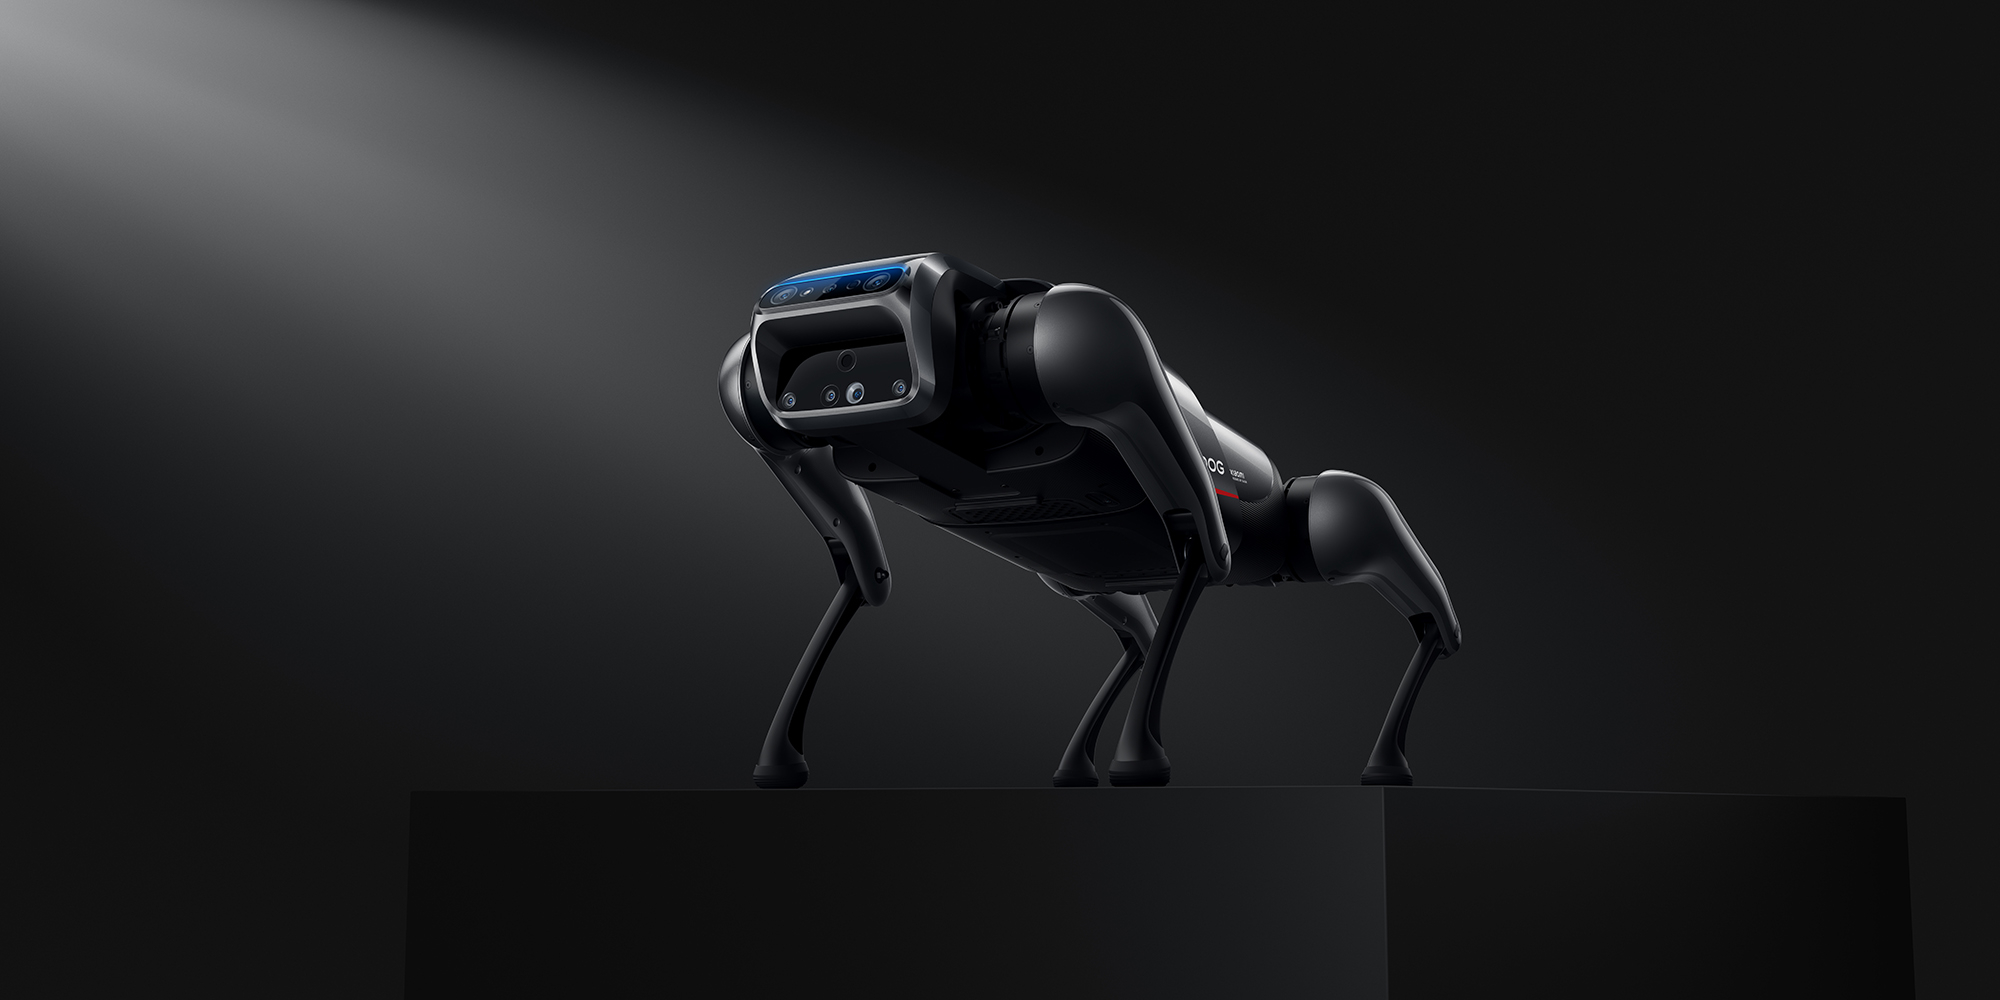 CyberDog - Robot chó thông minh của Xiaomi